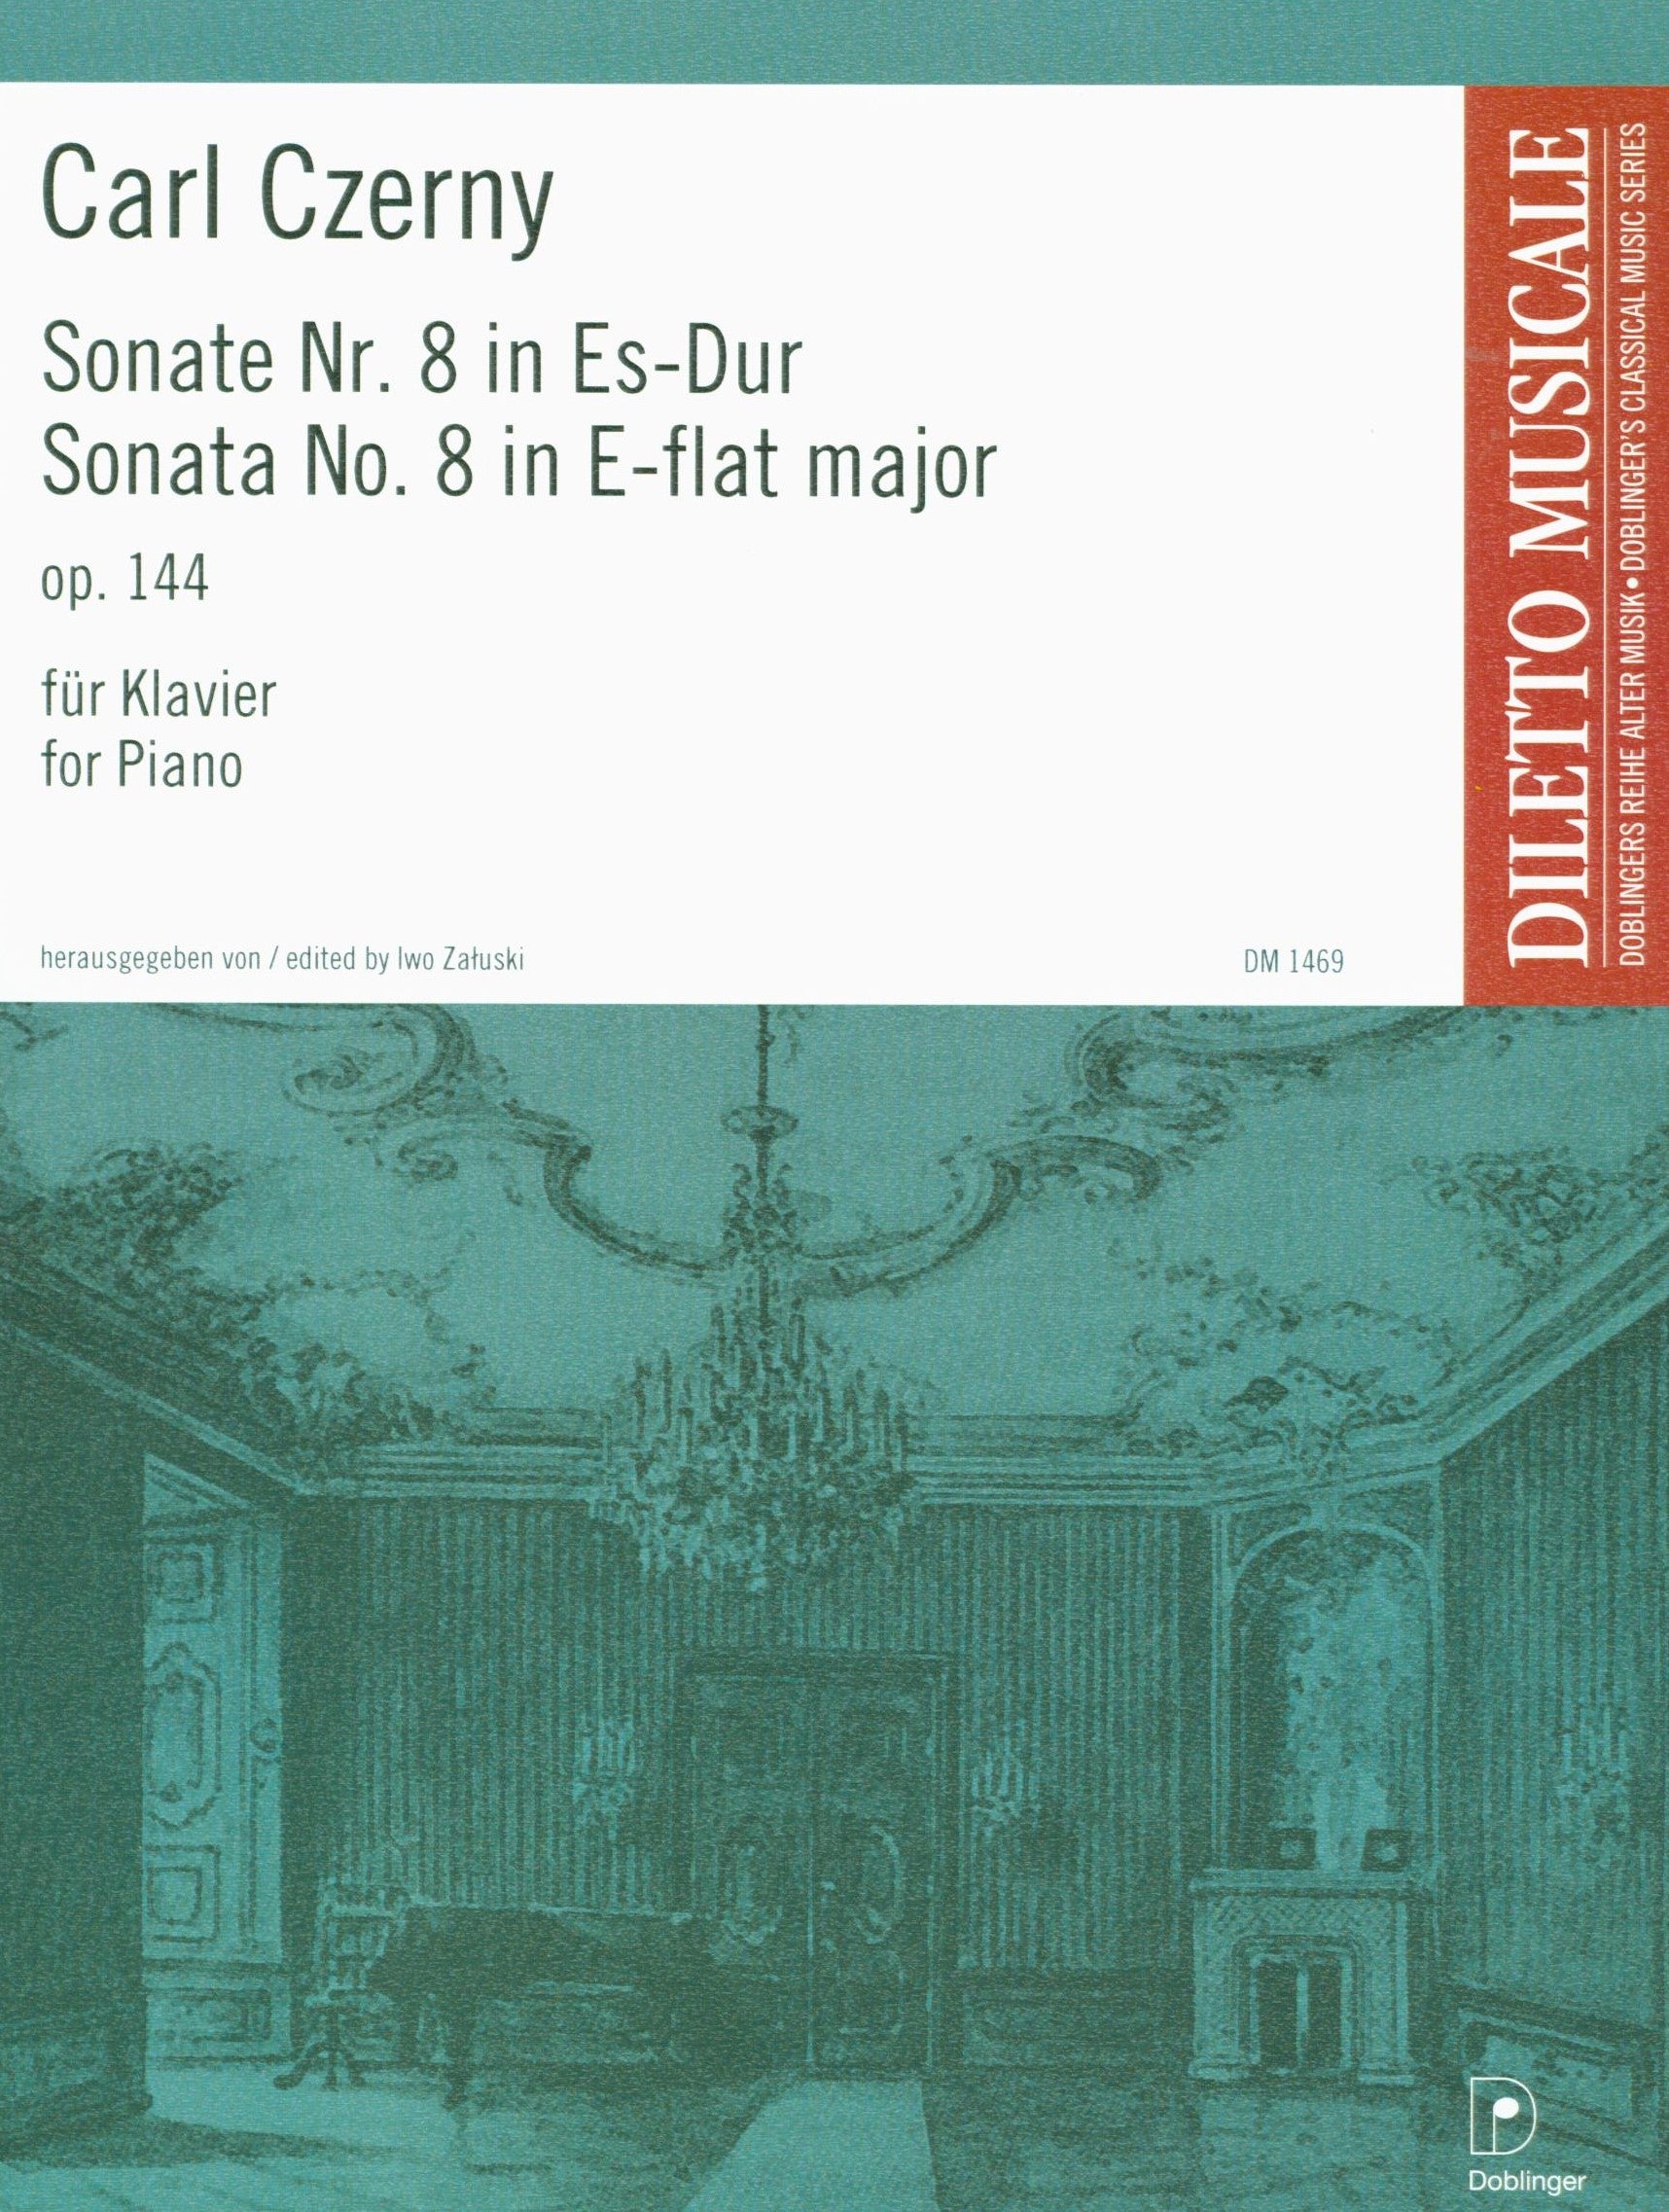 Czerny: Piano Sonata No. 8 in E-flat Major, Op. 144